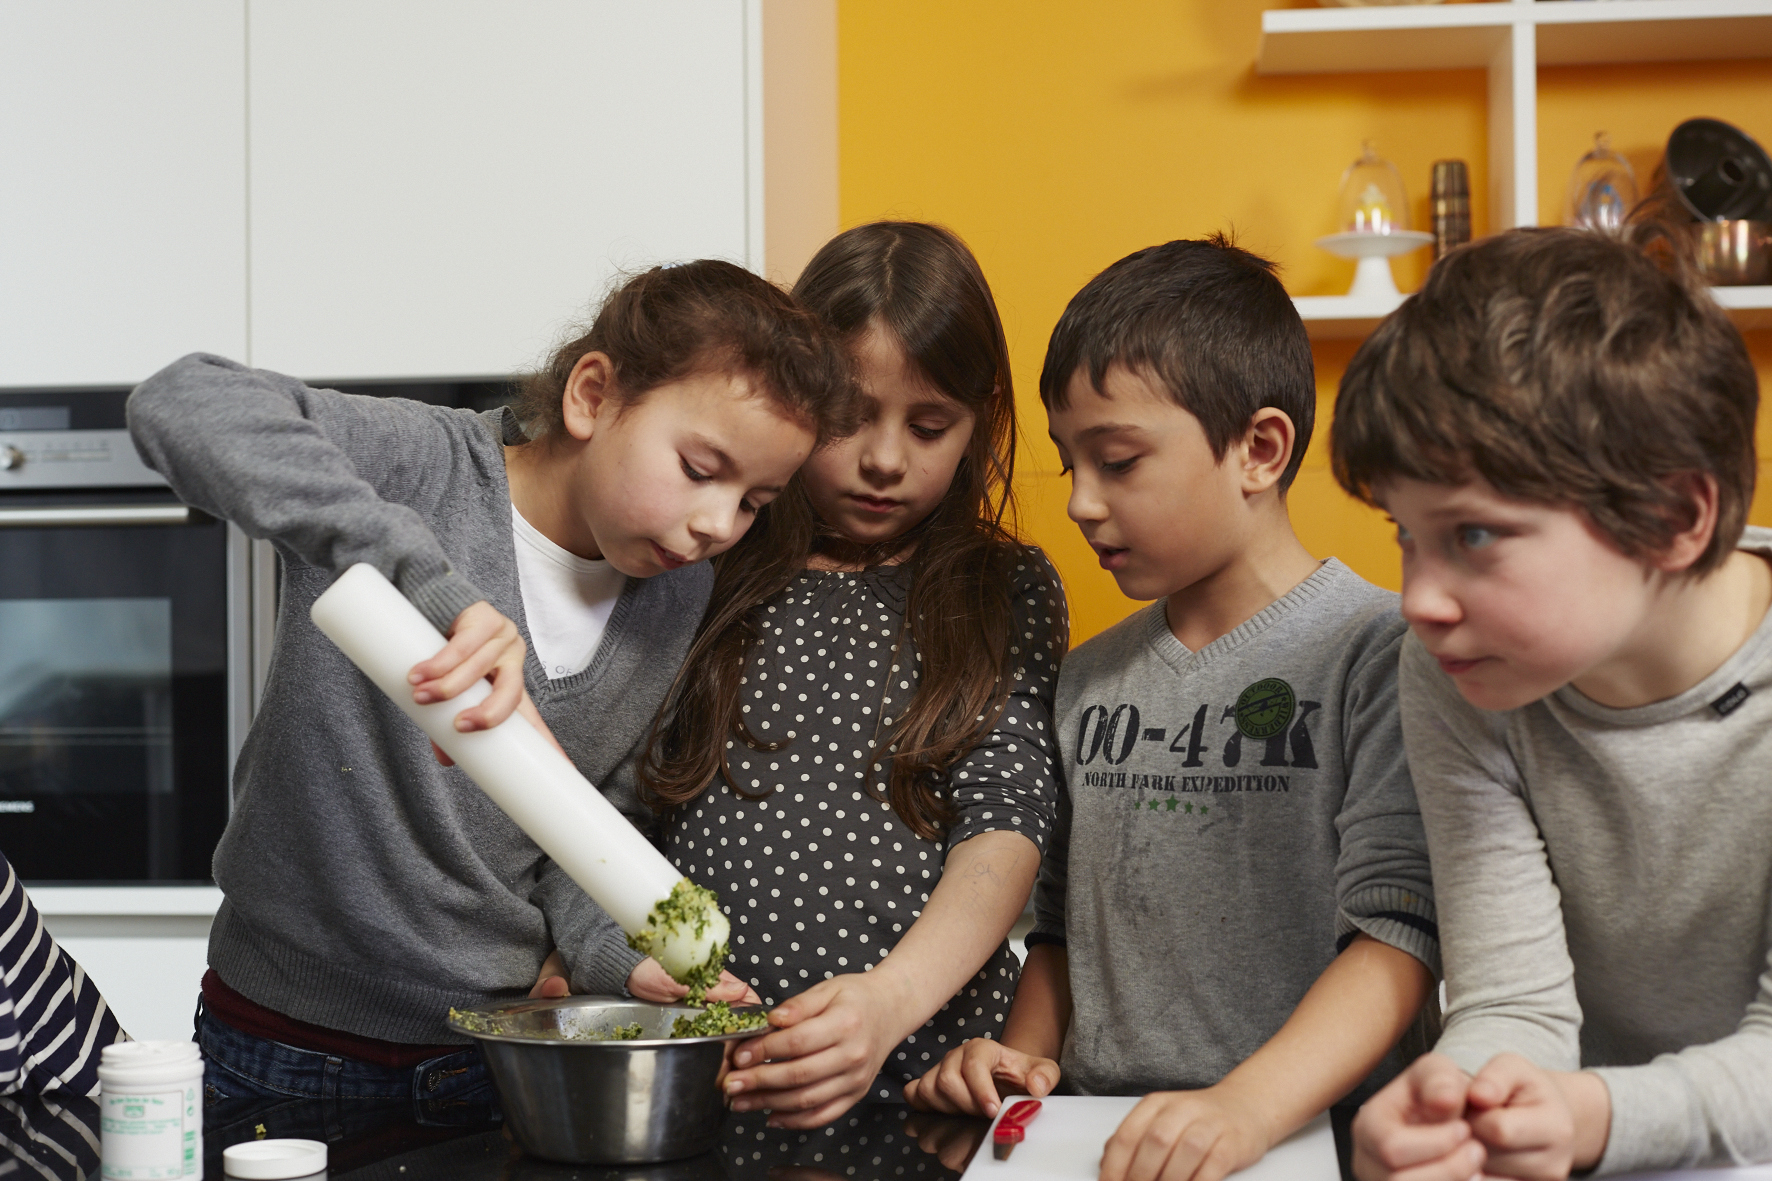 Bild aus dem Programm CHILDREN Entdecker (Kinderarmut): Eine Gruppe von Kindern kocht gemeinsam